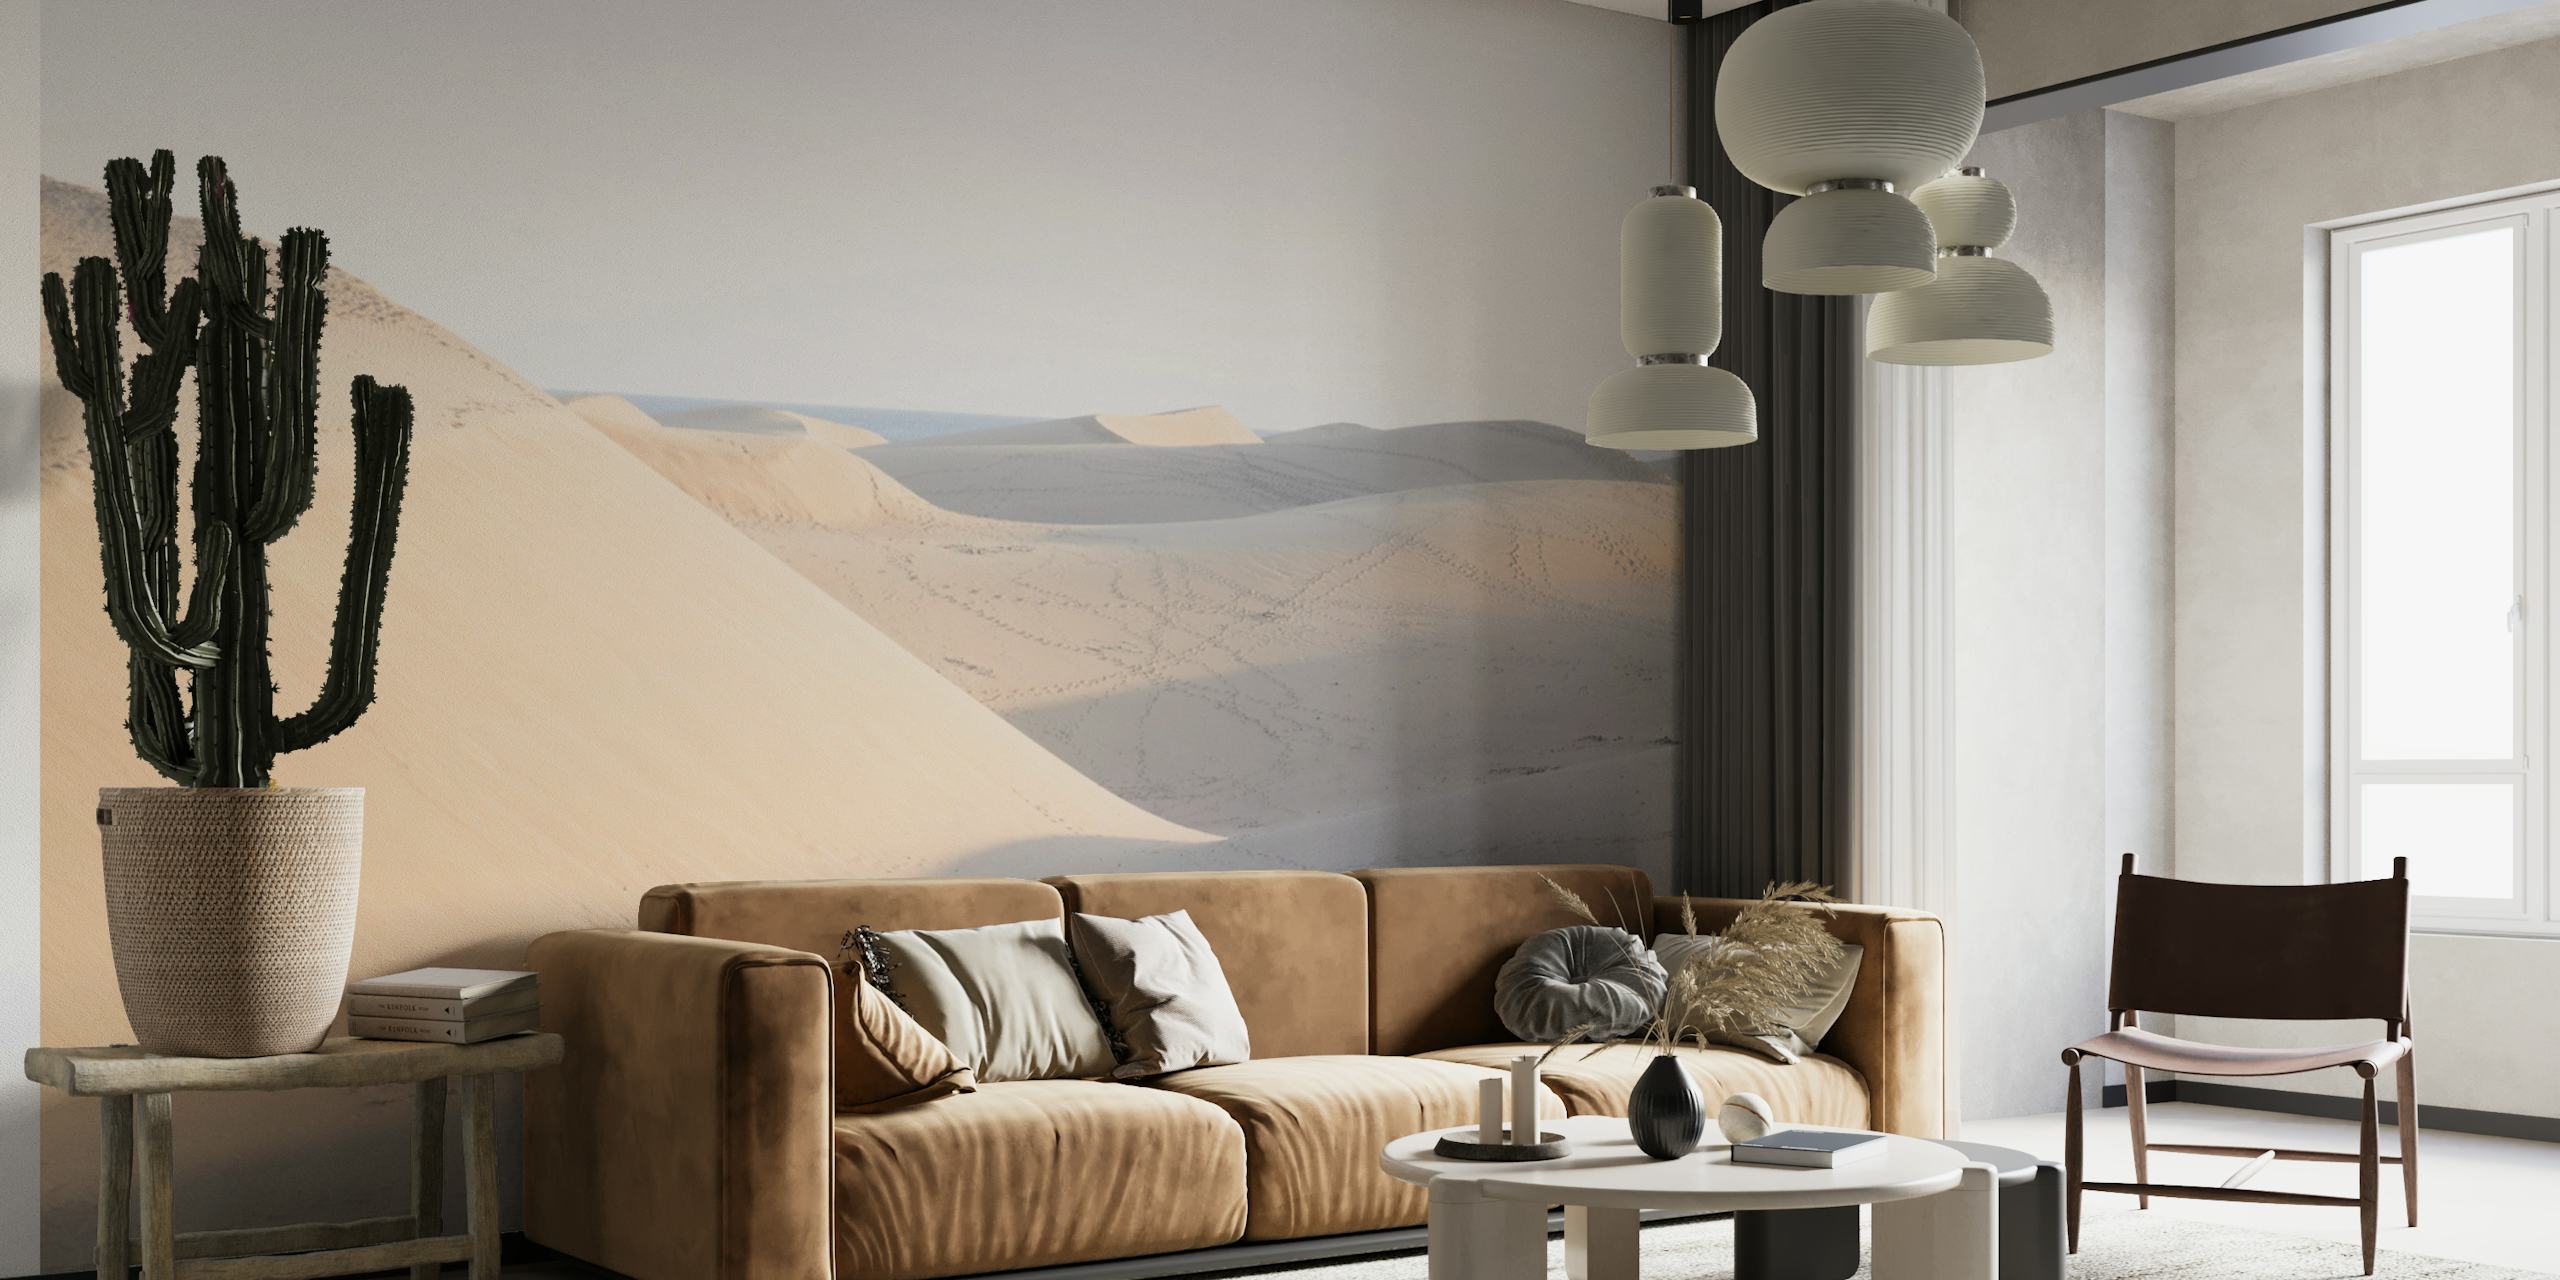 Fototapeta s klidnou pouštní scénou s měkkými dunami a jemným stínováním